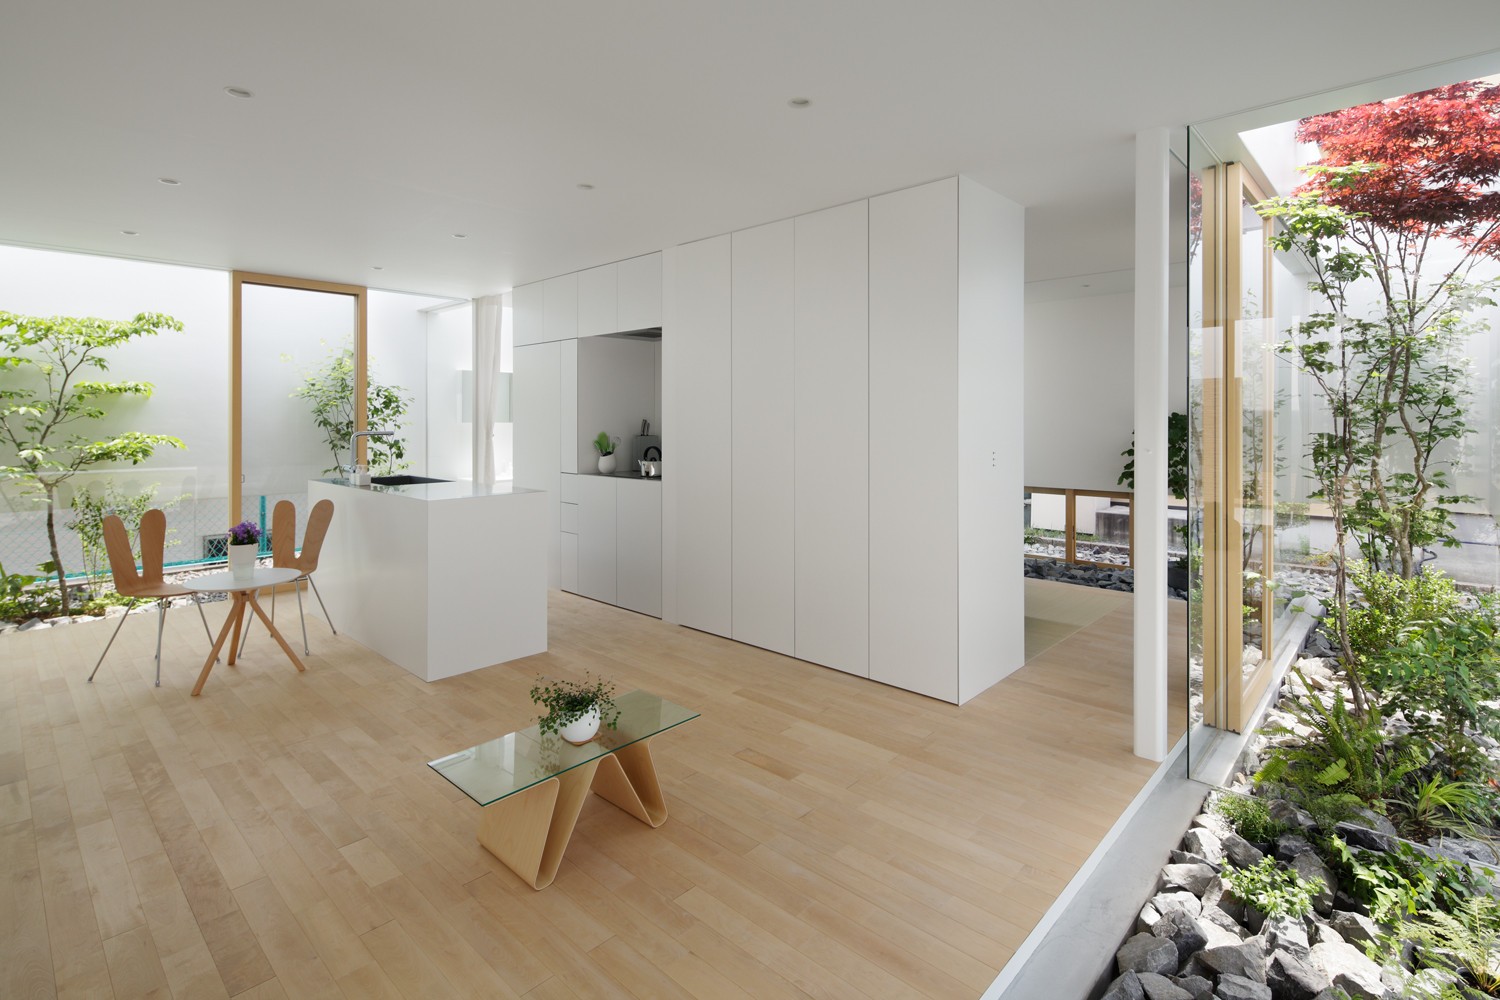 Décor do dia: cozinha minimalista com armários brancos e jardim integrado (Foto: Divulgação)